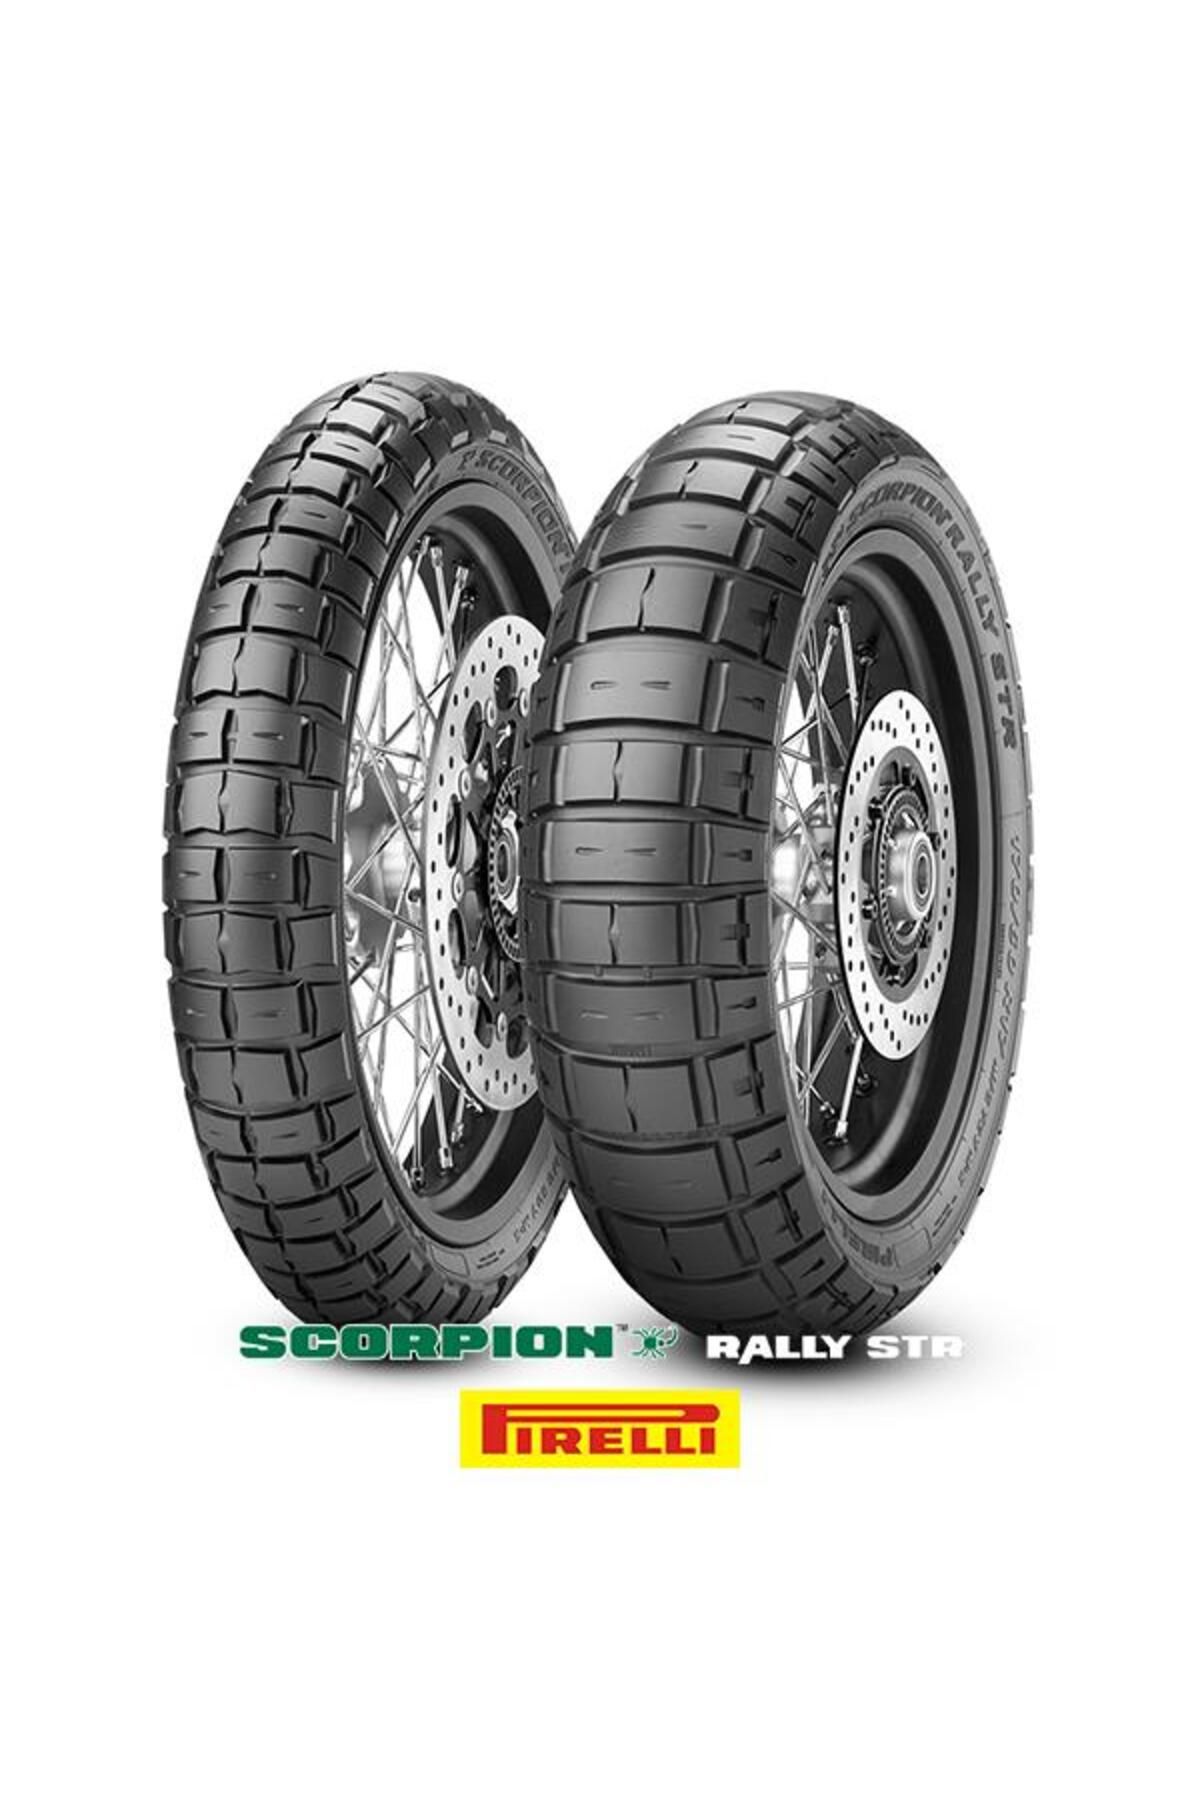 Pirelli Scorpion Rally Str 90/90-21 54v (A) M S Ve 150/70r18 70v M S